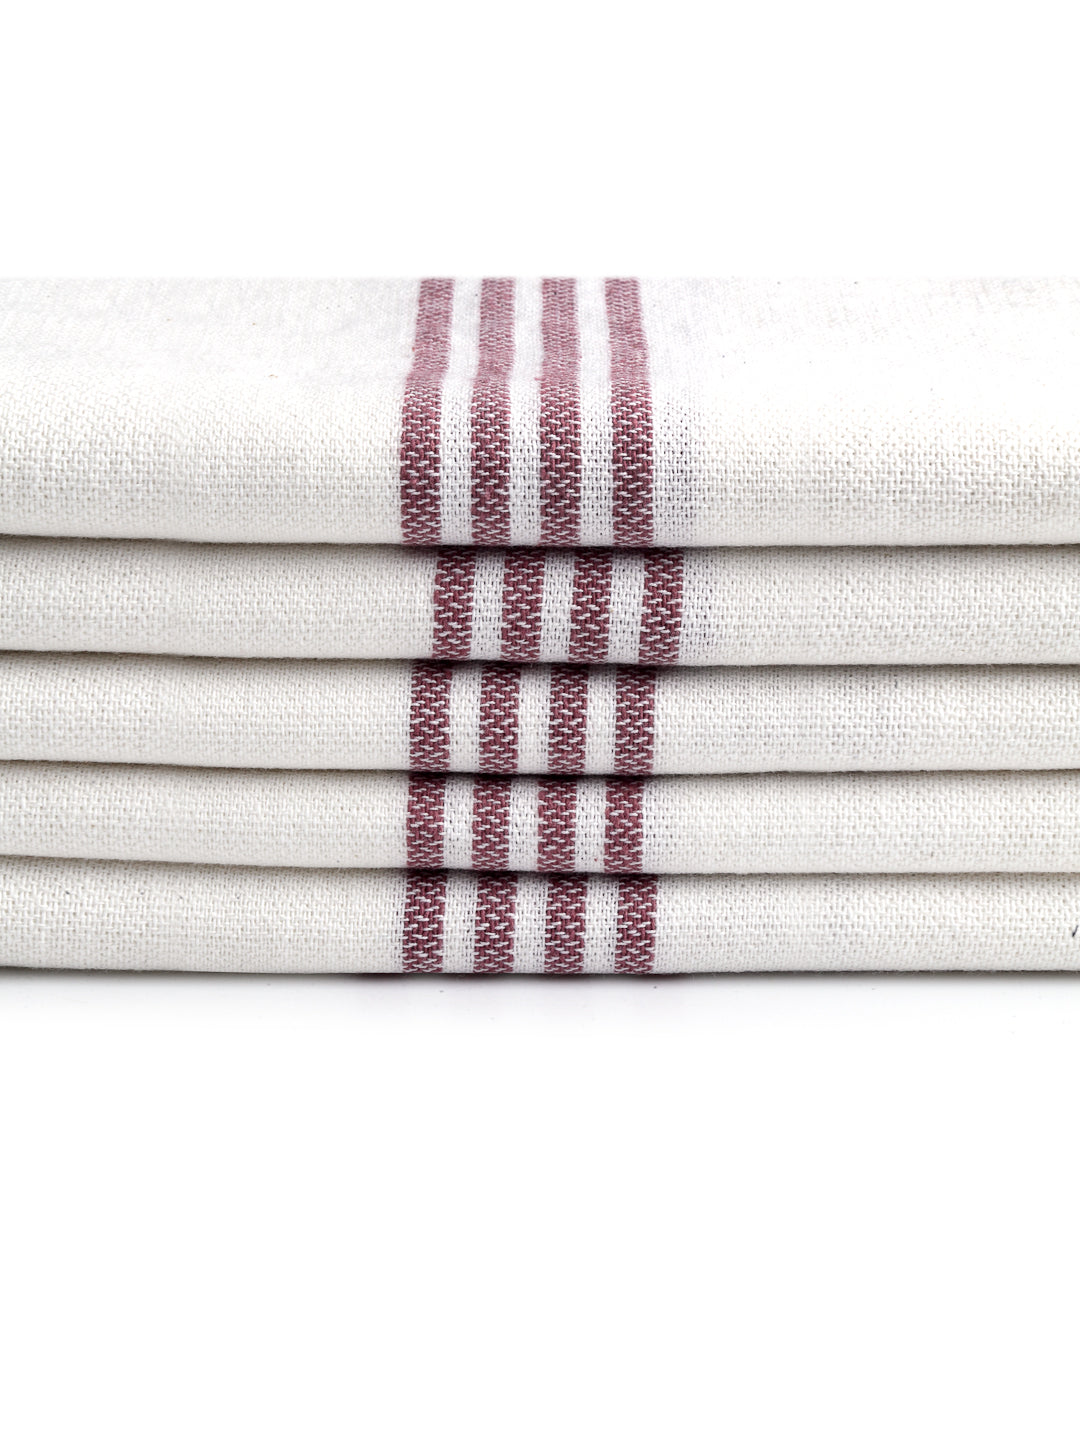 Arrabi Red Solid Handwoven Cotton Hand Towel (Set of 5) (90 X 35 cm)